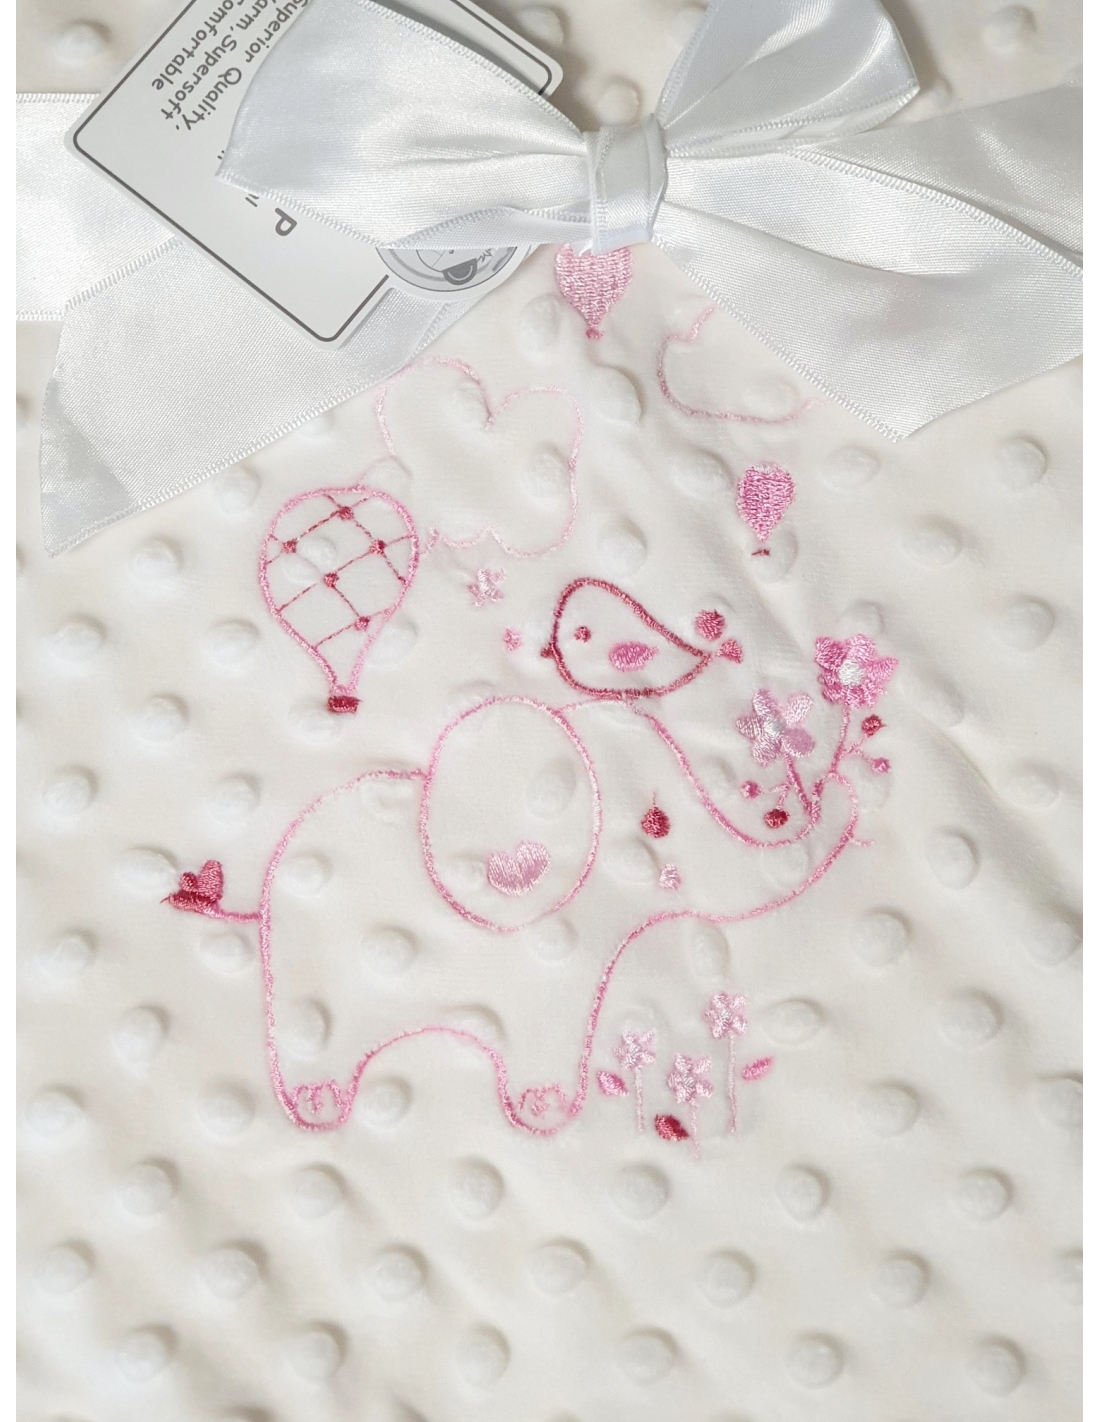 Couverture bébé minky et coton brodée – L'atelier Gravure